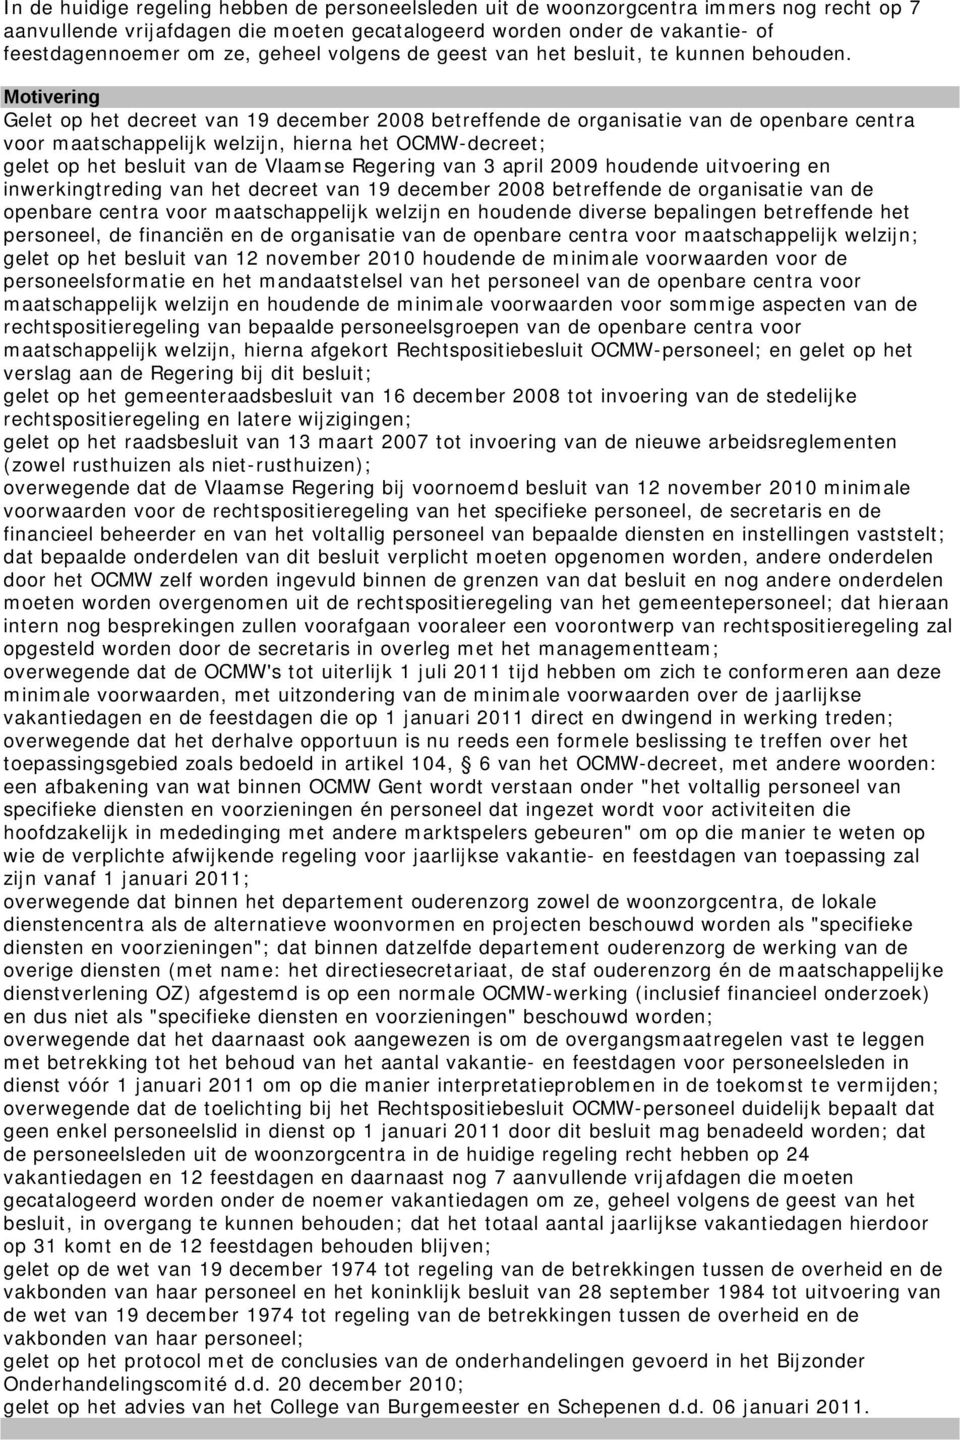 Gelet op het decreet van 19 december 2008 betreffende de organisatie van de openbare centra voor maatschappelijk welzijn, hierna het OCMW-decreet; gelet op het besluit van de Vlaamse Regering van 3